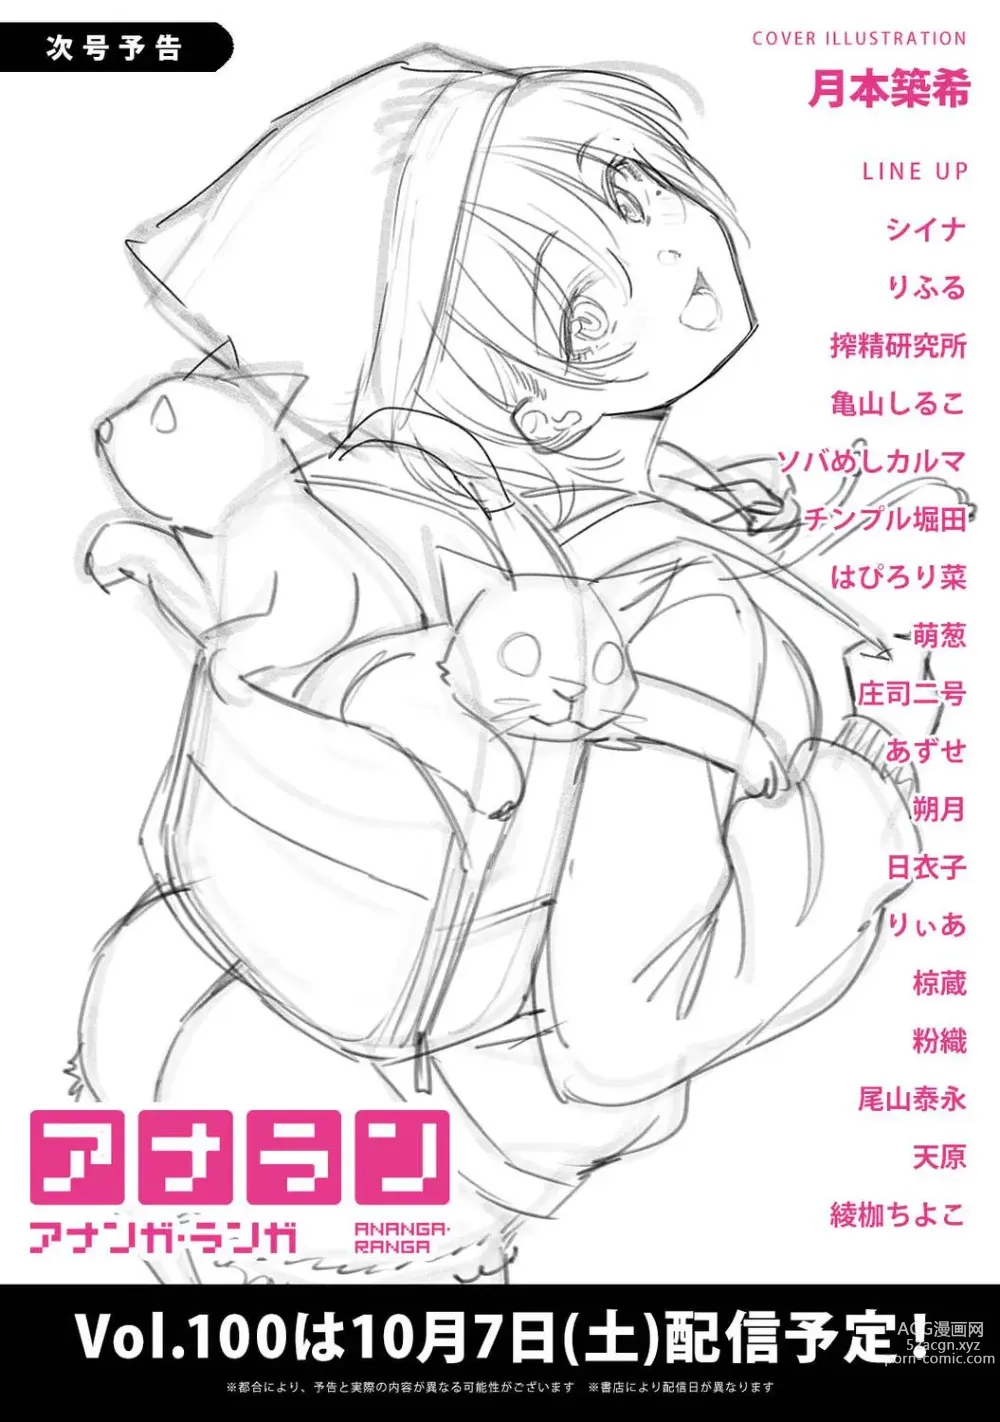 Page 400 of manga COMIC Ananga-Ranga Vol 99